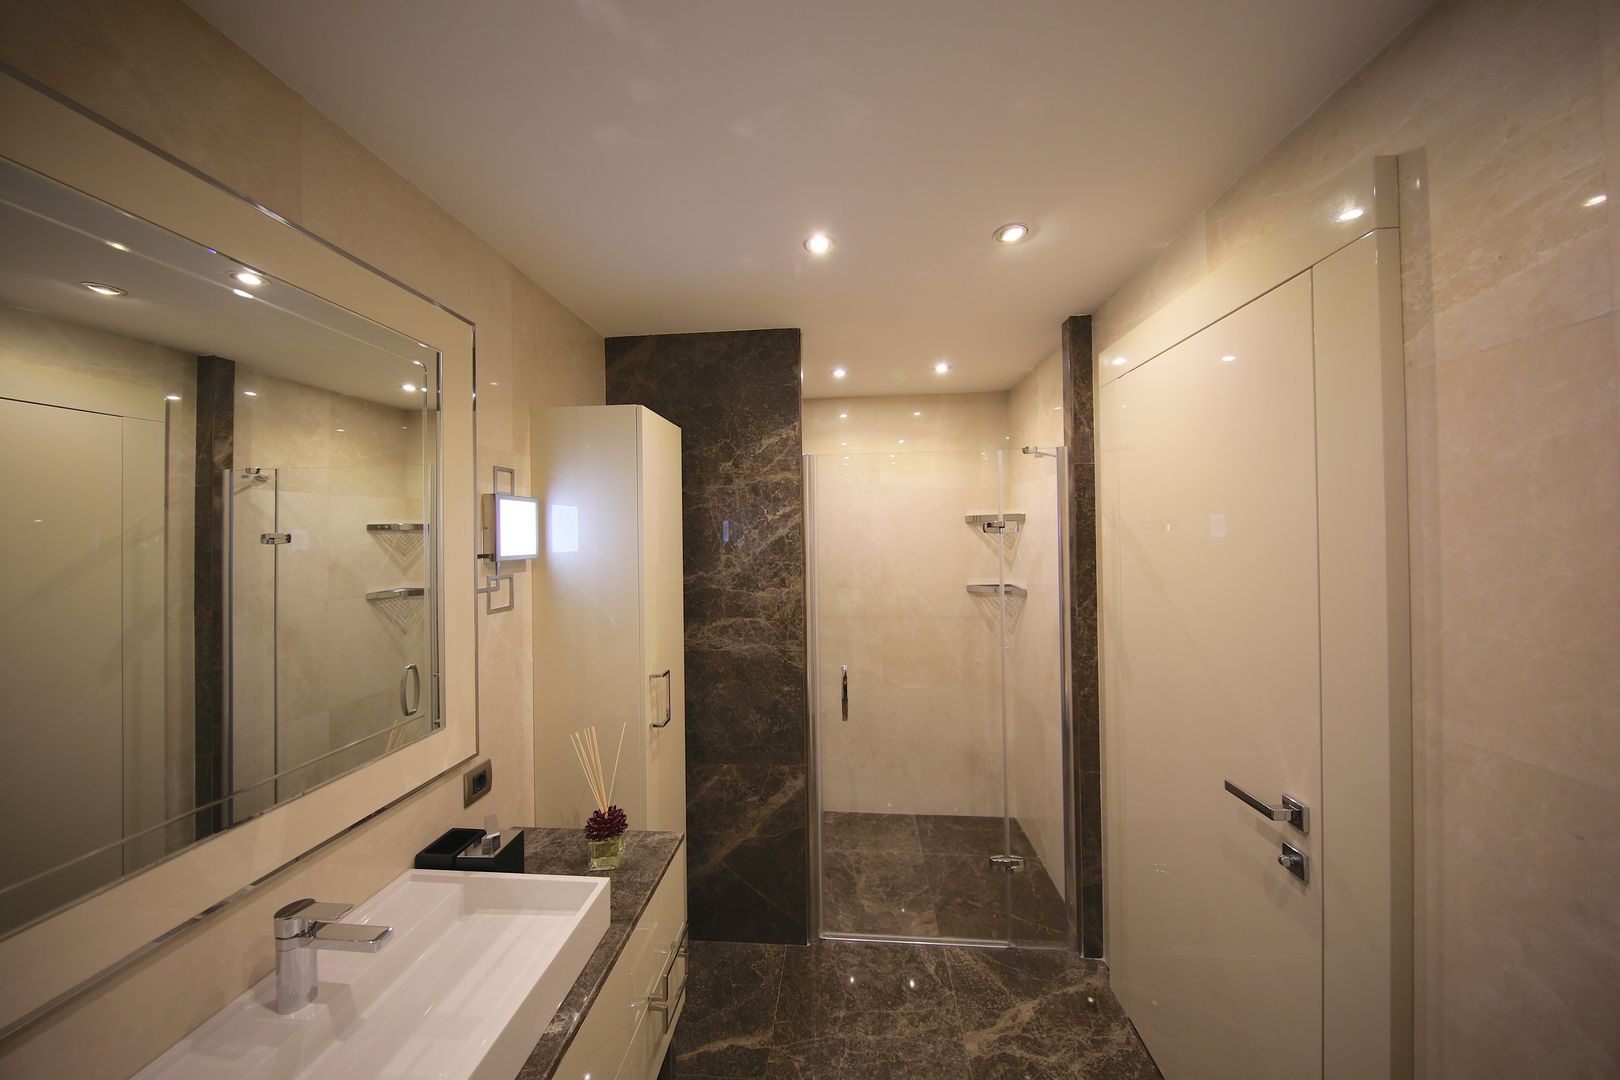 TEKNİK YAPI ÖRNEK DAİRE, Kerim Çarmıklı İç Mimarlık Kerim Çarmıklı İç Mimarlık Modern bathroom